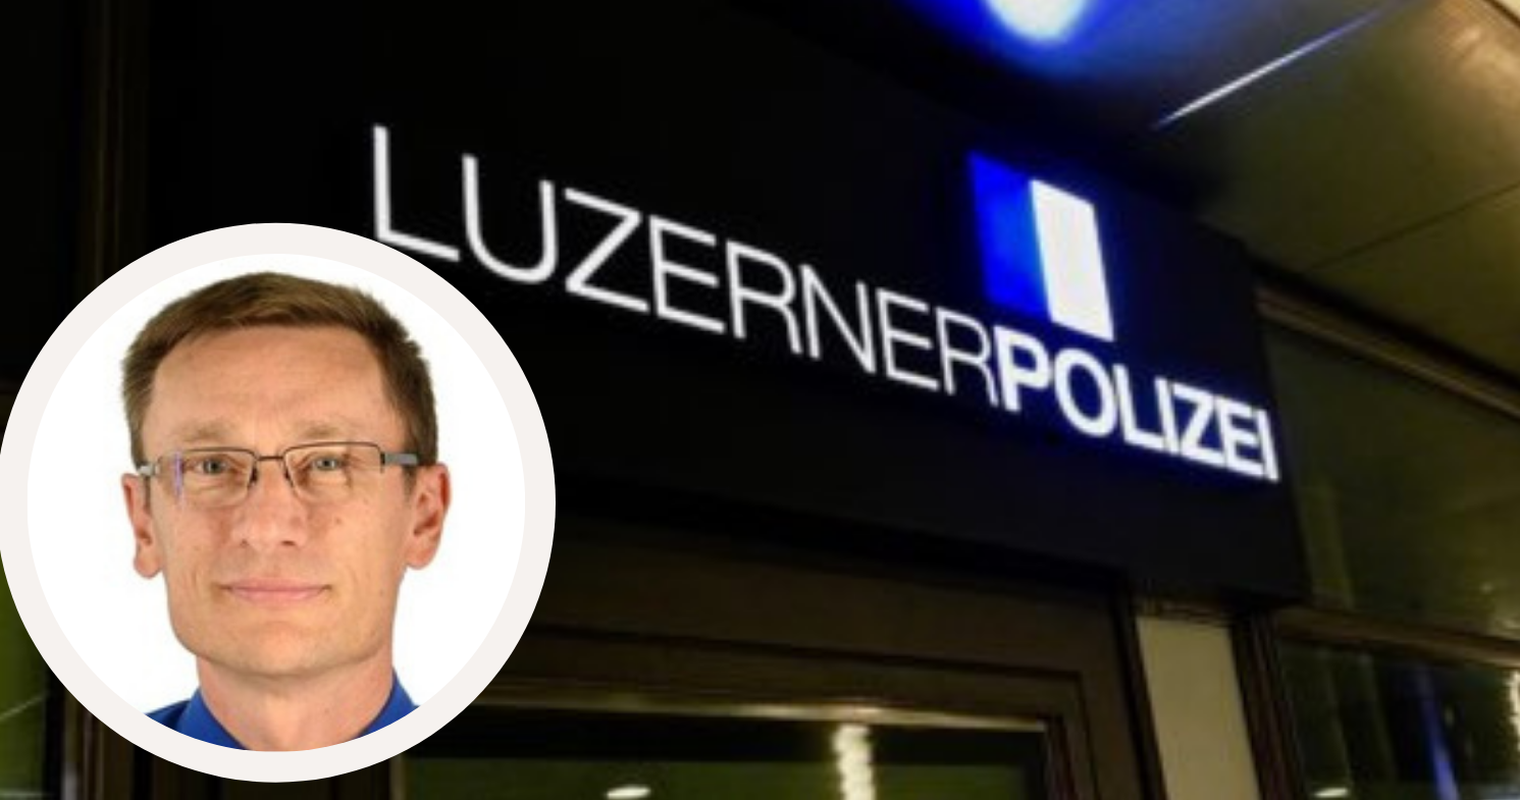 118 Stellen: Luzerner Polizei braucht massiv mehr Personal